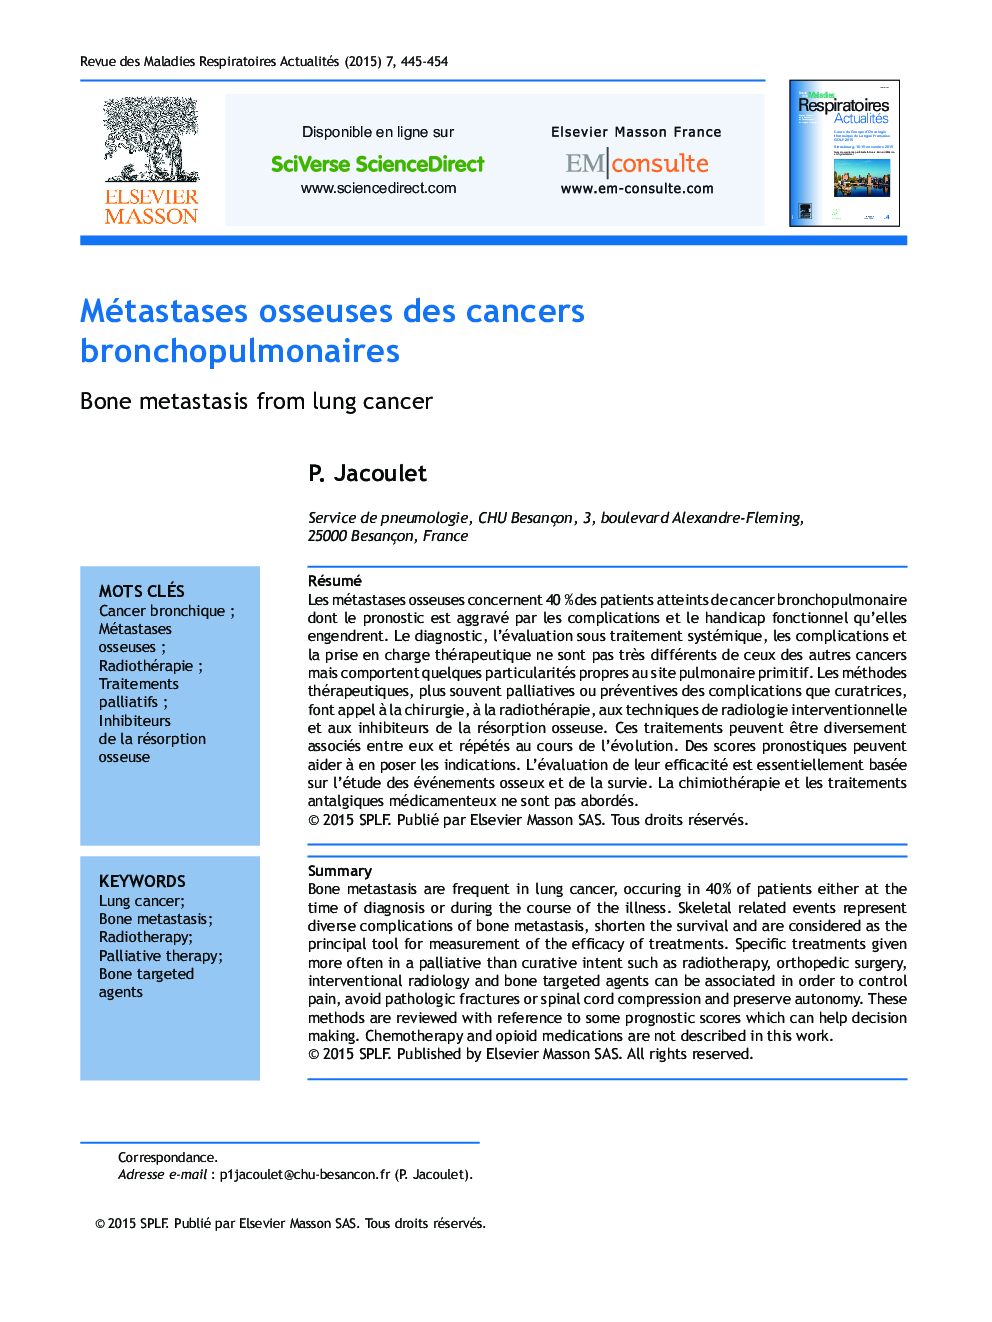 Métastases osseuses des cancers bronchopulmonaires